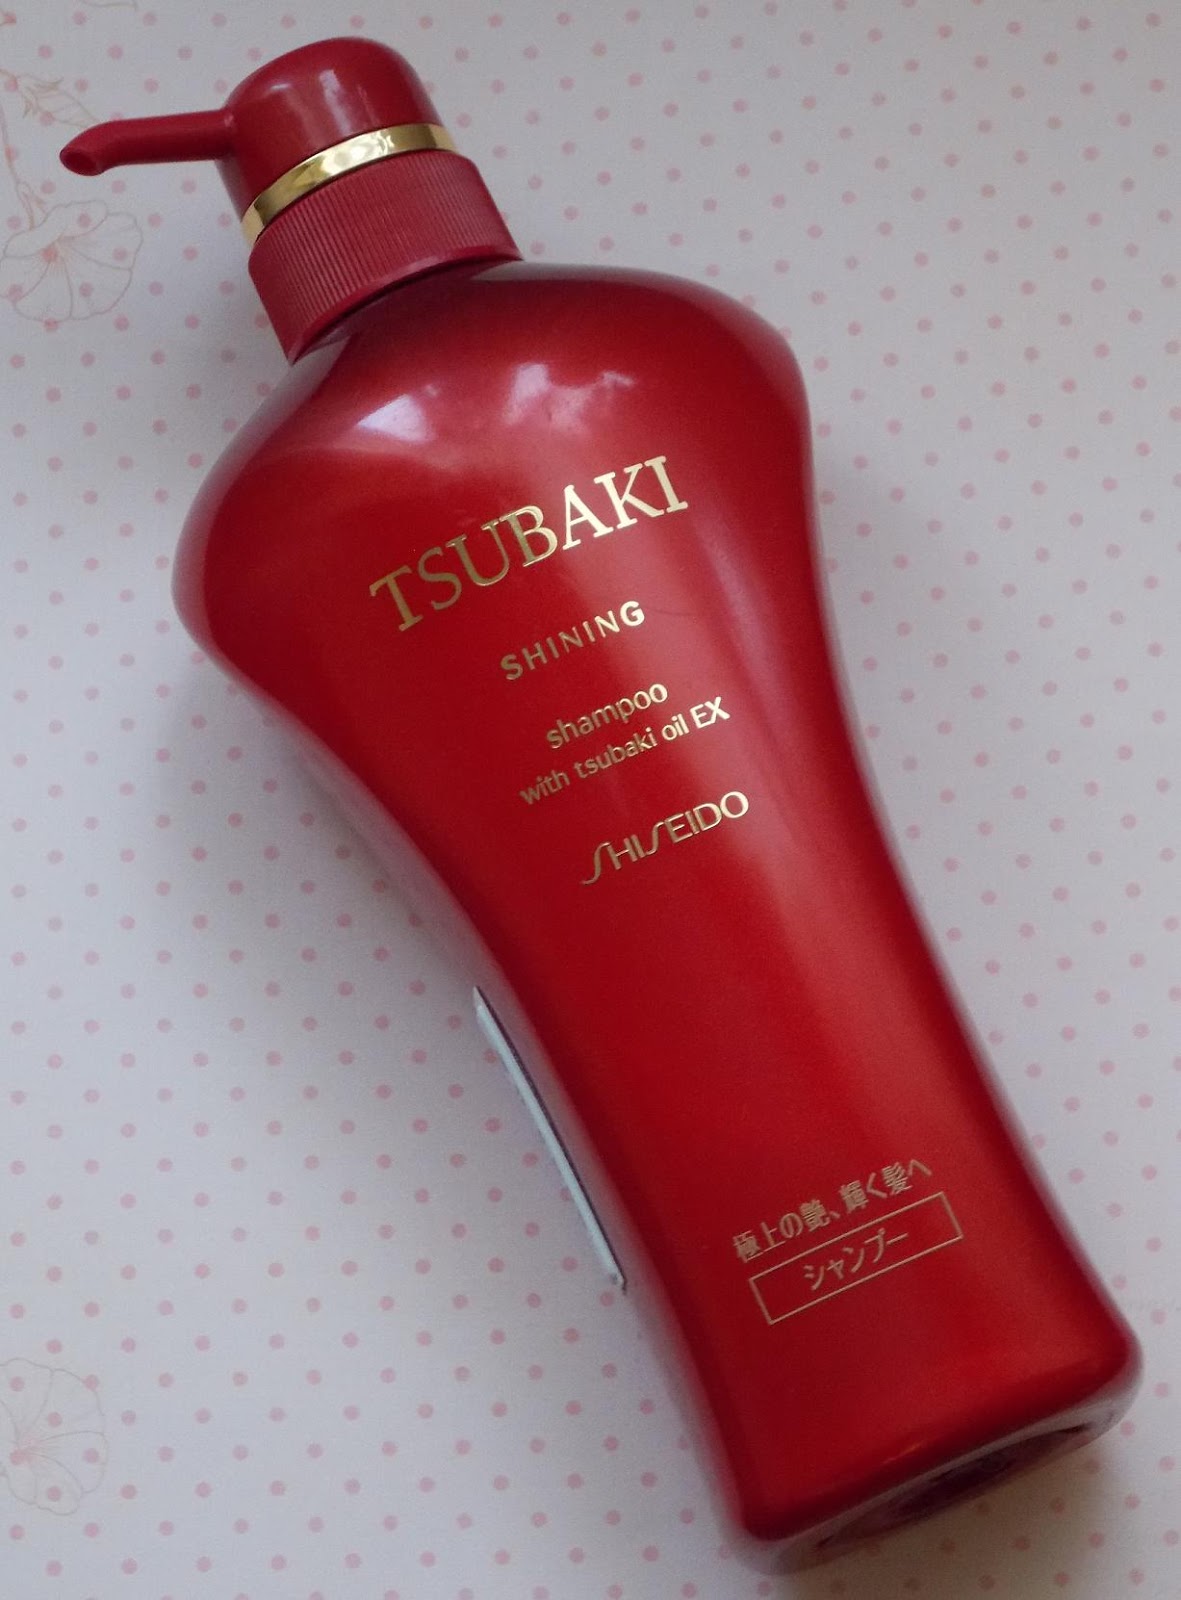 Shiseido для волос. Корейский шампунь Тсубаки. Шампунь Тсубаки от шисейдо. Тсубаки шампунь красный. Корейский шампунь Tsubaki красный.